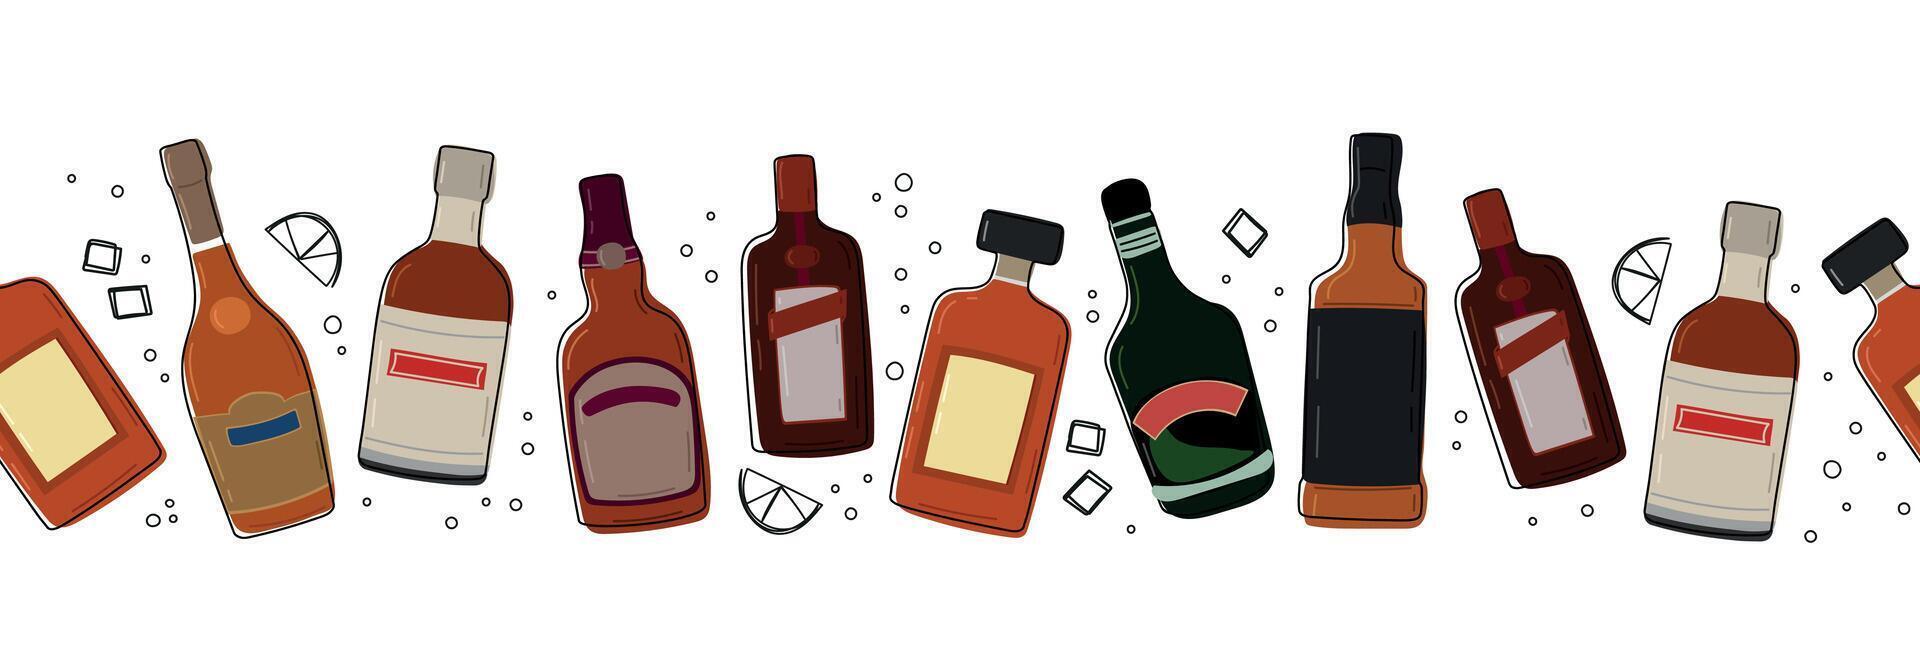 varios botellas de alcohol sin costura borde. mano dibujado alcohol botellas con garabatear elementos. diferente formas y colores de botellas en un fila. vector